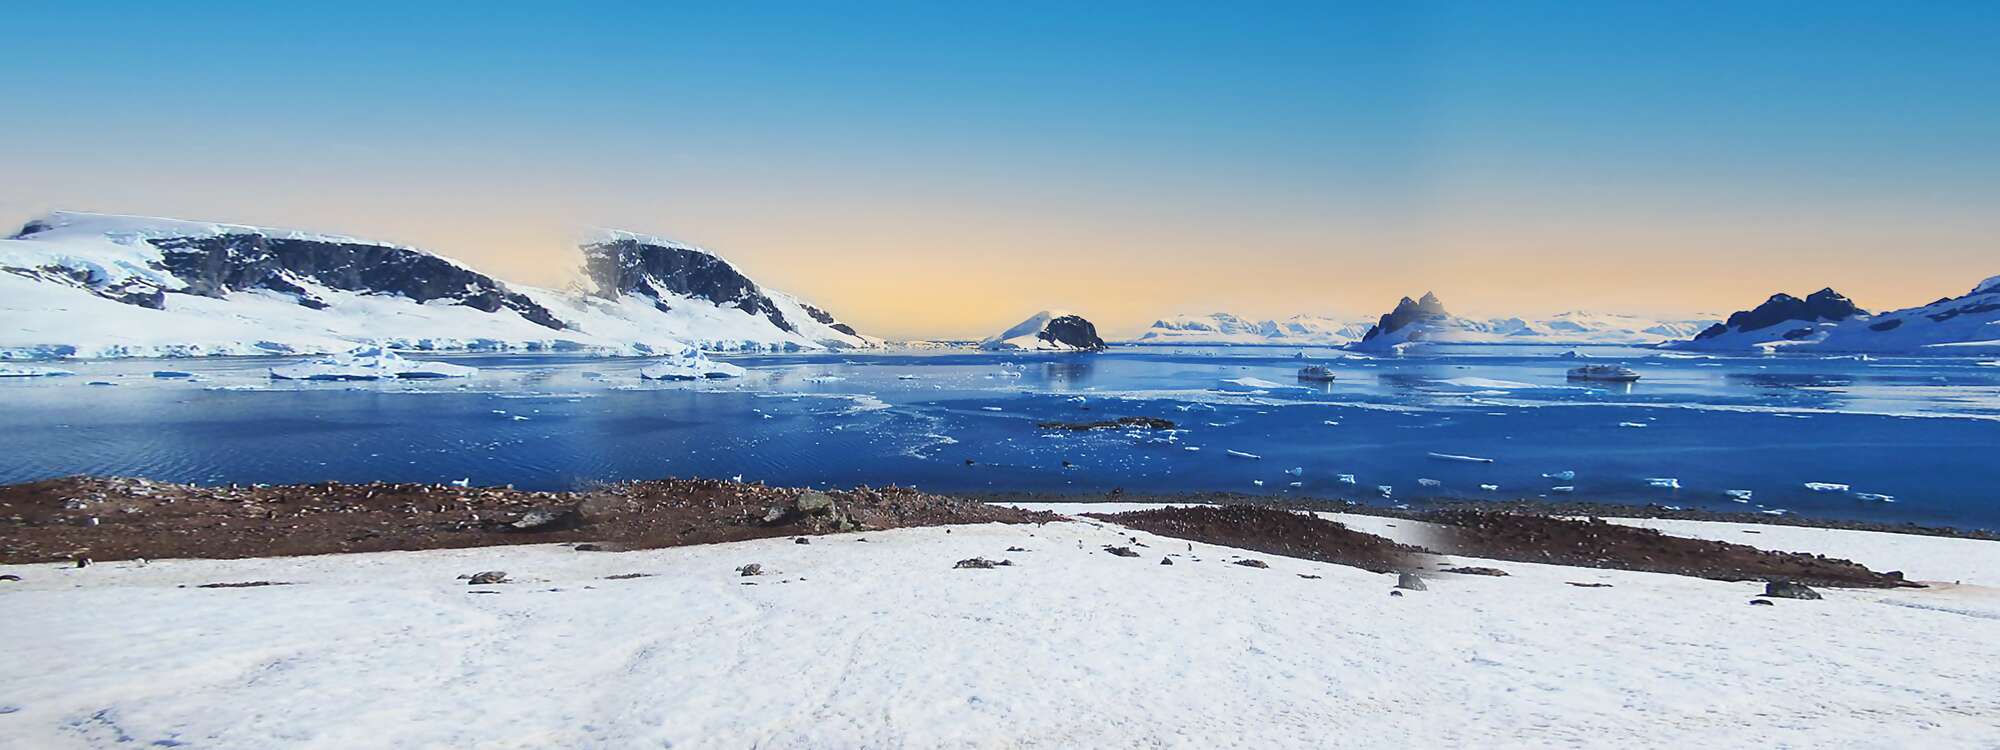 
Der Errera-Kanal erstreckt sich von Danco Island mit Rongé Island auf der linken Seite, Cuverville Island in der Mitte und der Arctowski-Halbinsel auf dem antarktischen Festland auf der rechten Seite - in der Region Antarktis